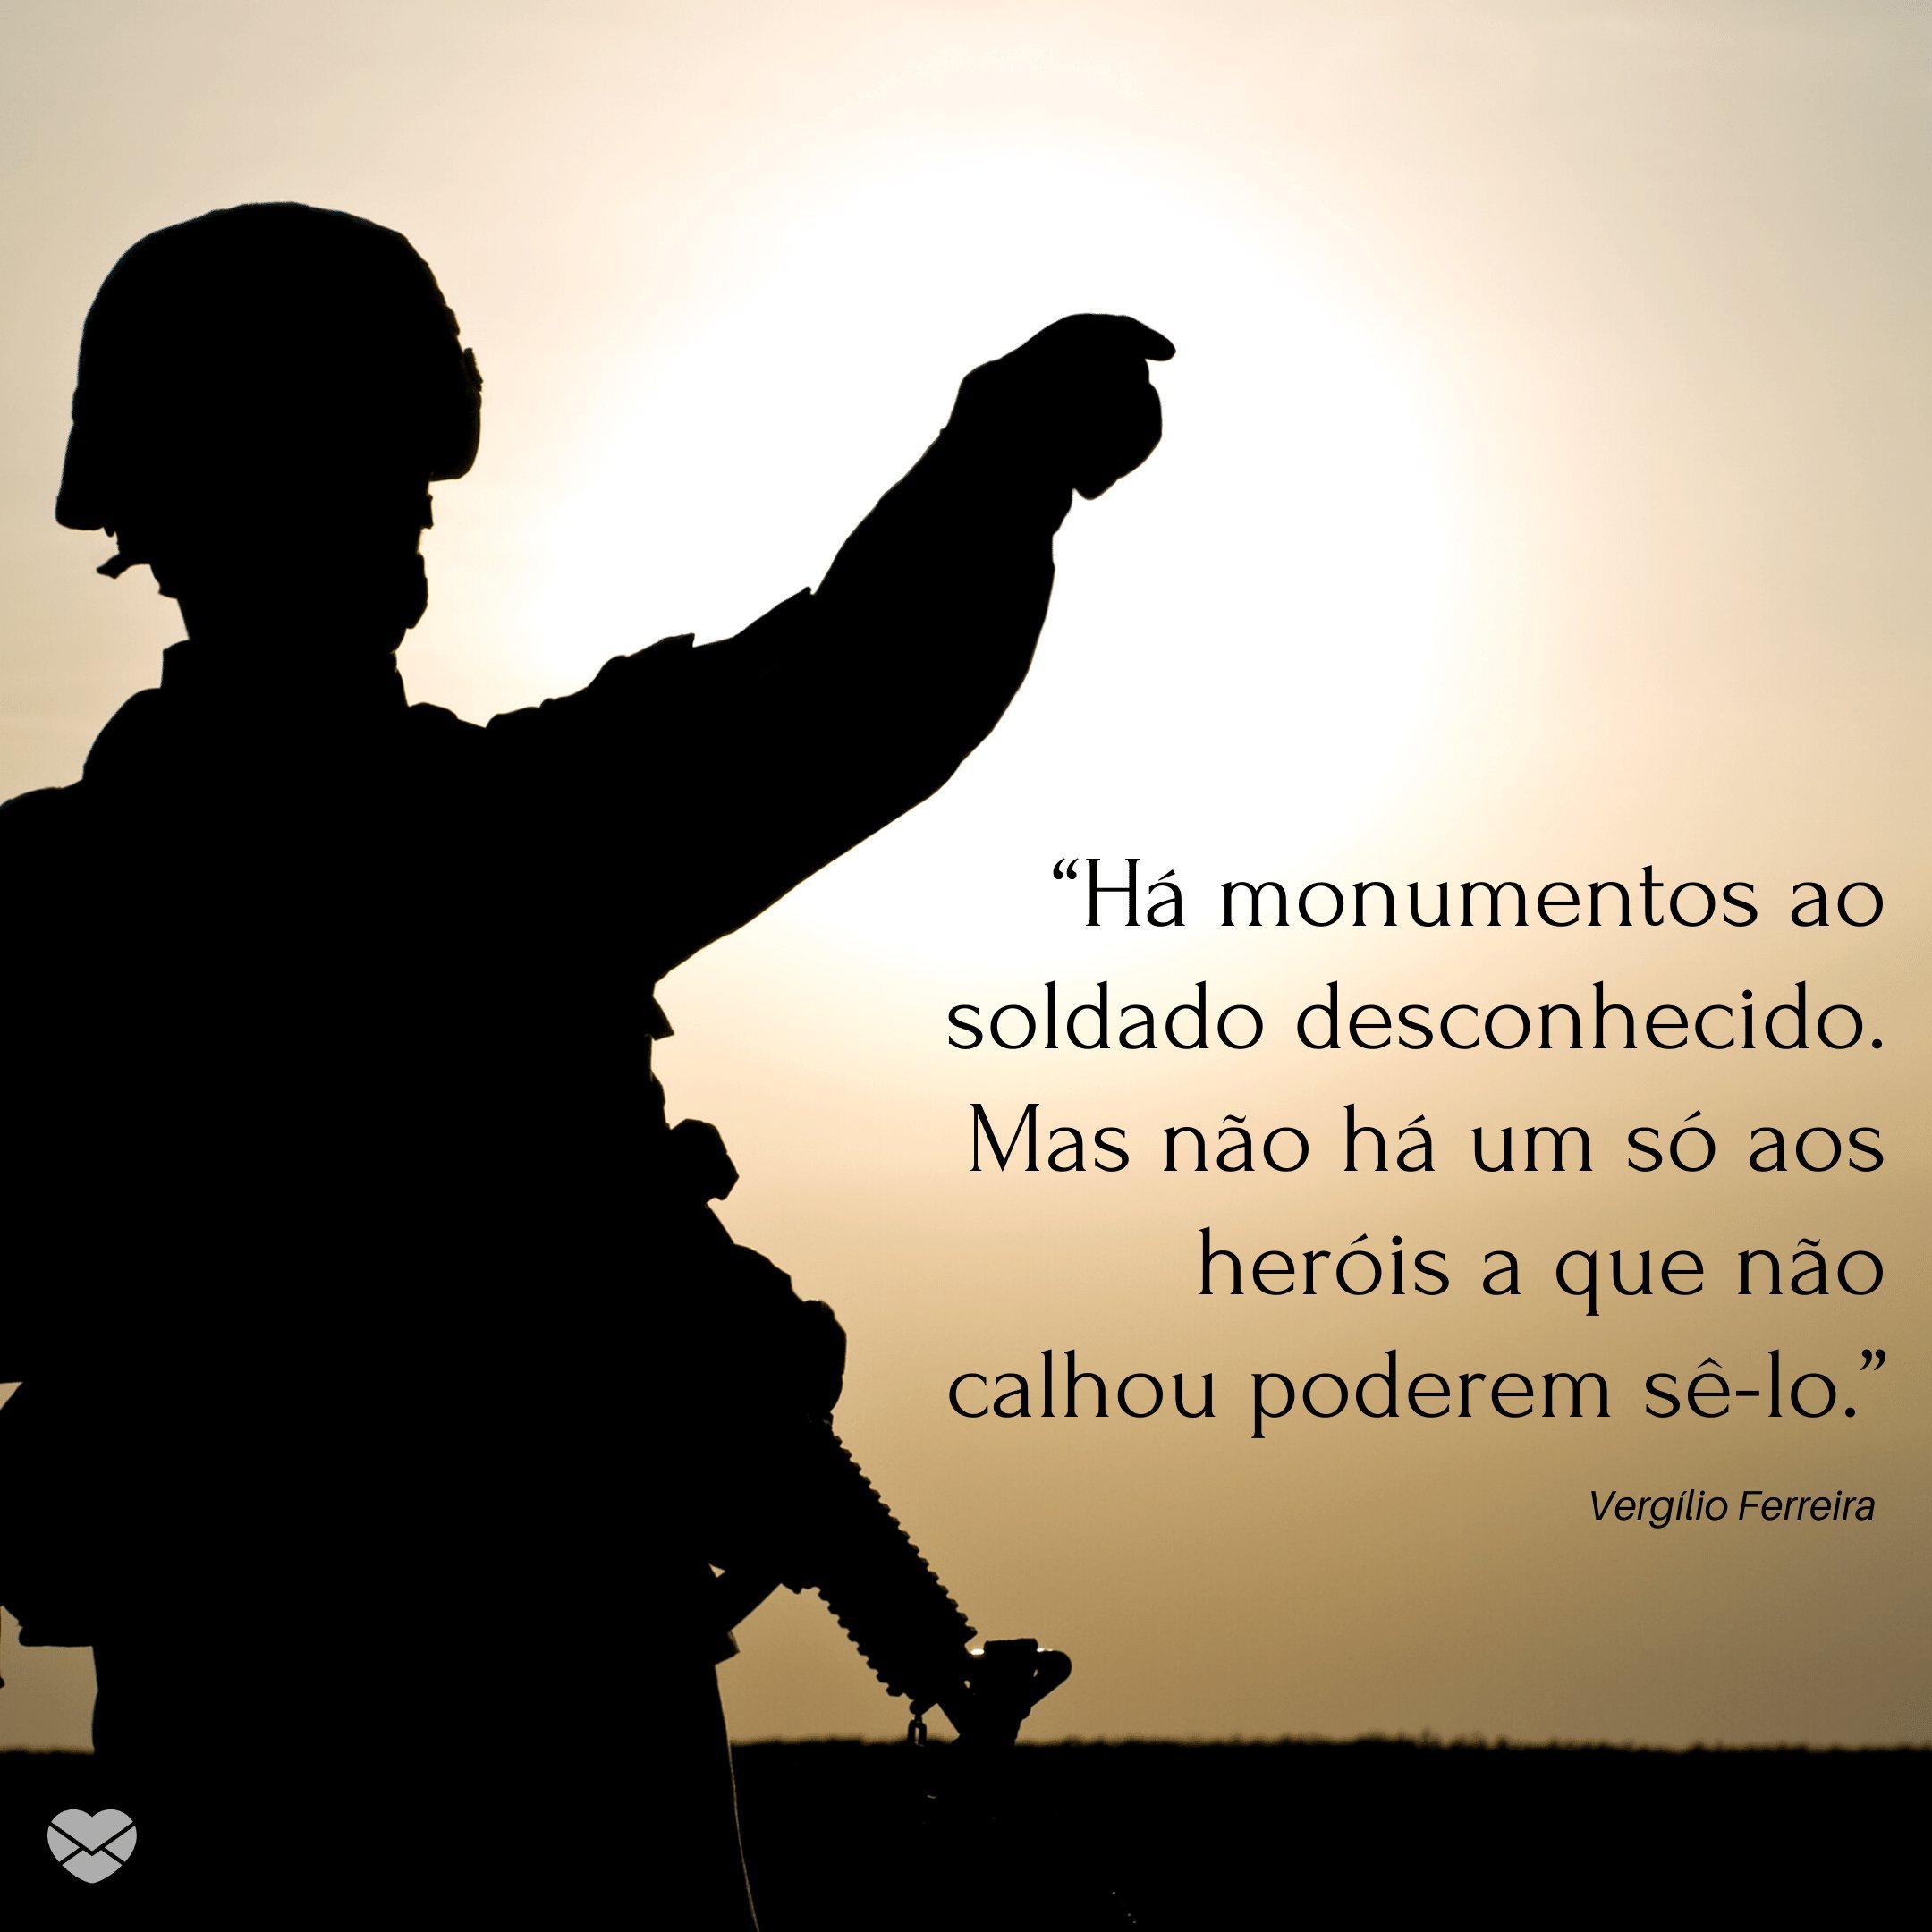 “Há monumentos ao soldado desconhecido. Mas não há um só aos heróis a que não calhou poderem sê-lo. - Vergílio Ferreira” - Frases sobre soldados